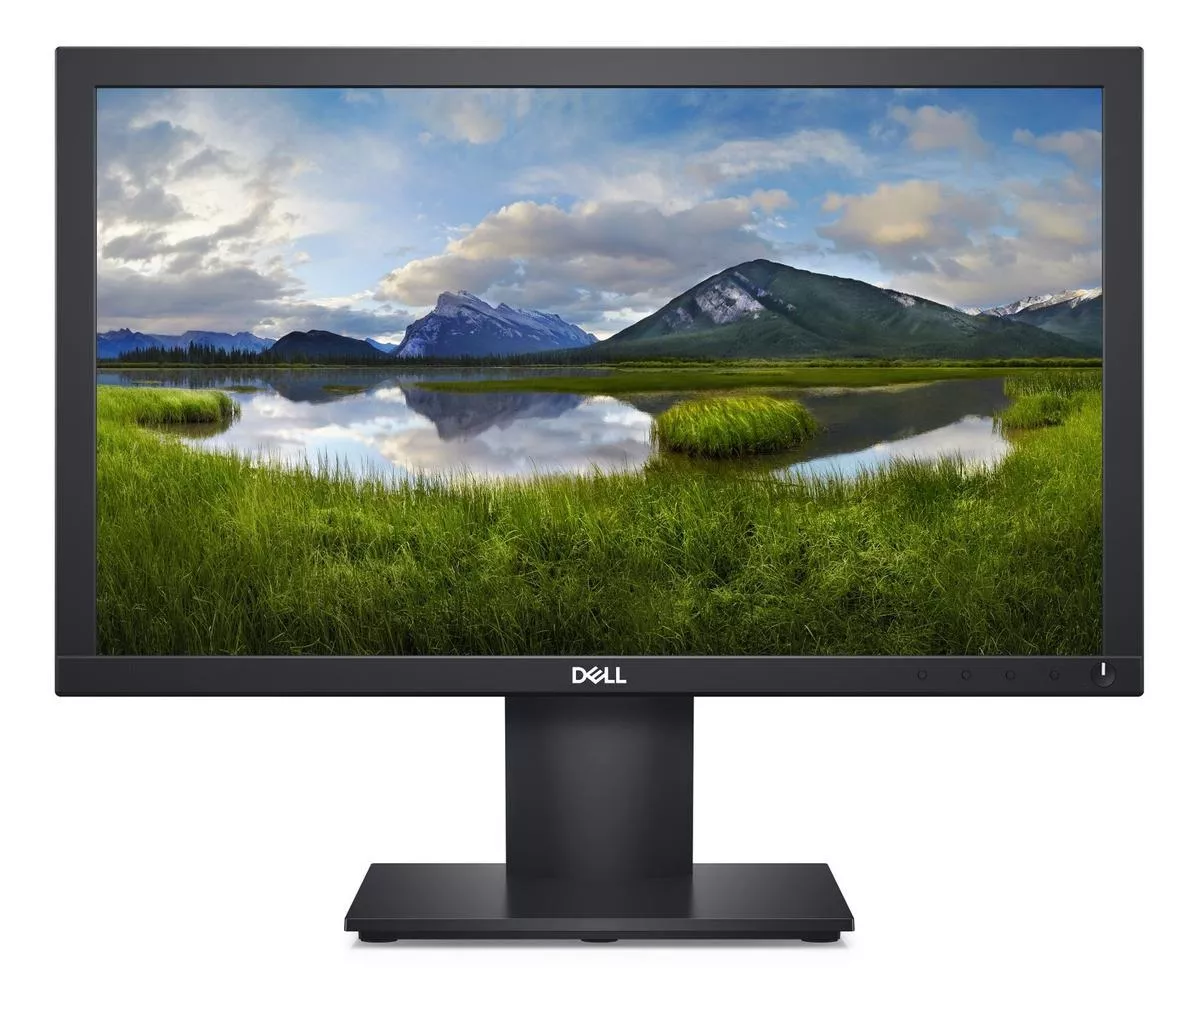 Monitor Dell E Series E1920h Led 19 Preto 100v/240v